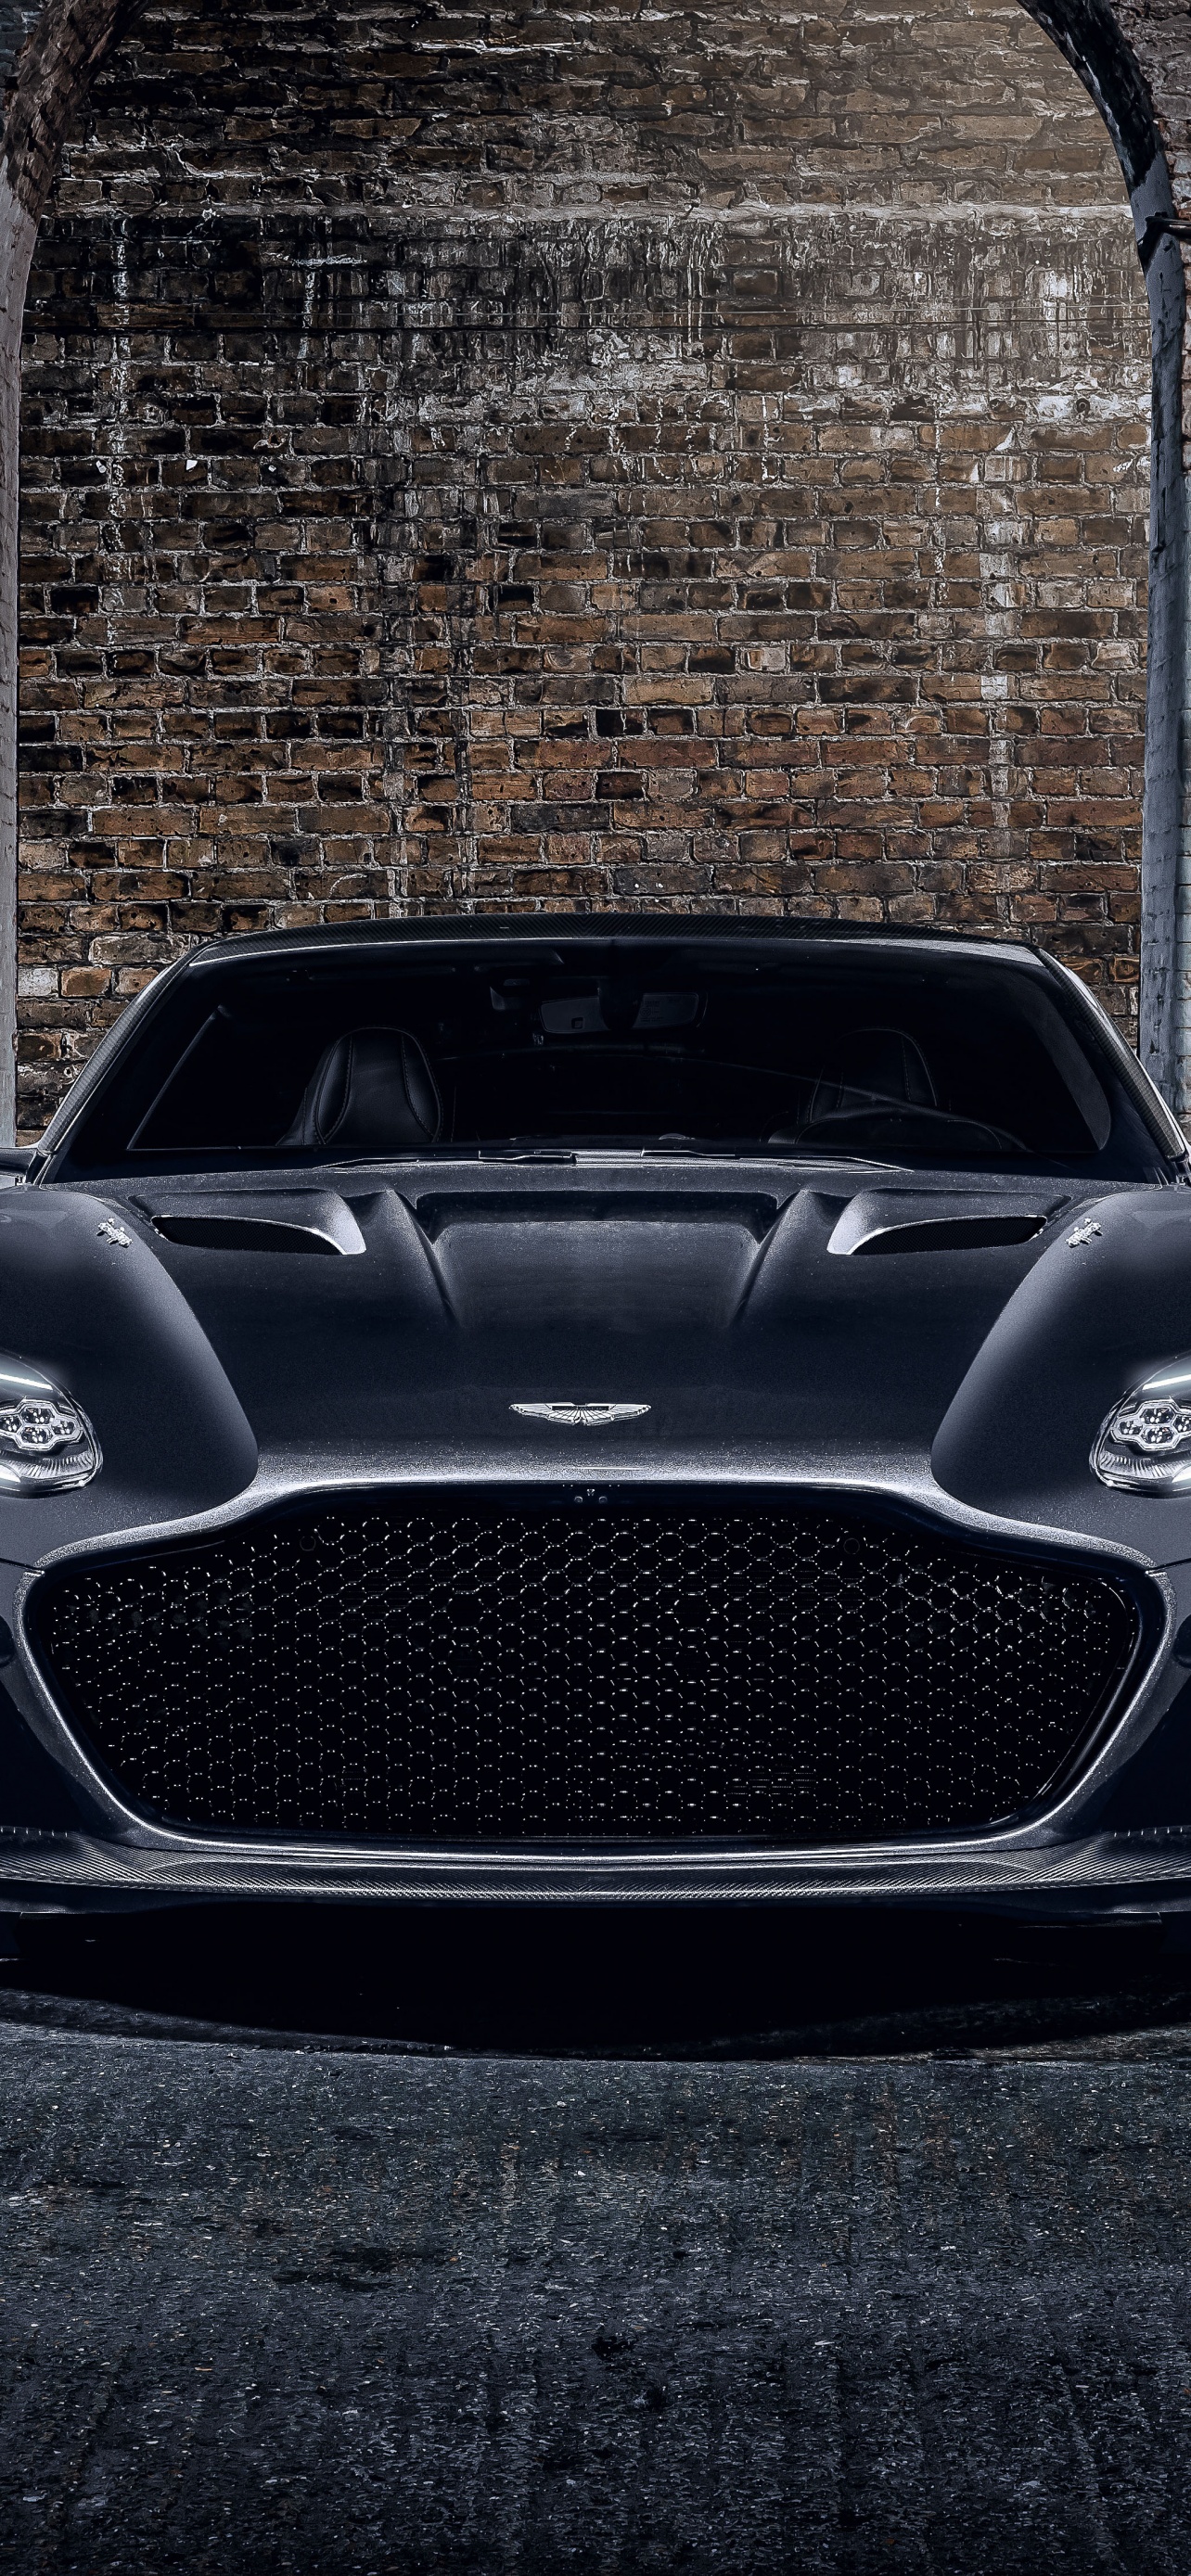 Aston Martin DBS Superleggera 007 Edition Wallpaper 4K, 2020, 5K, Cars,  #2498